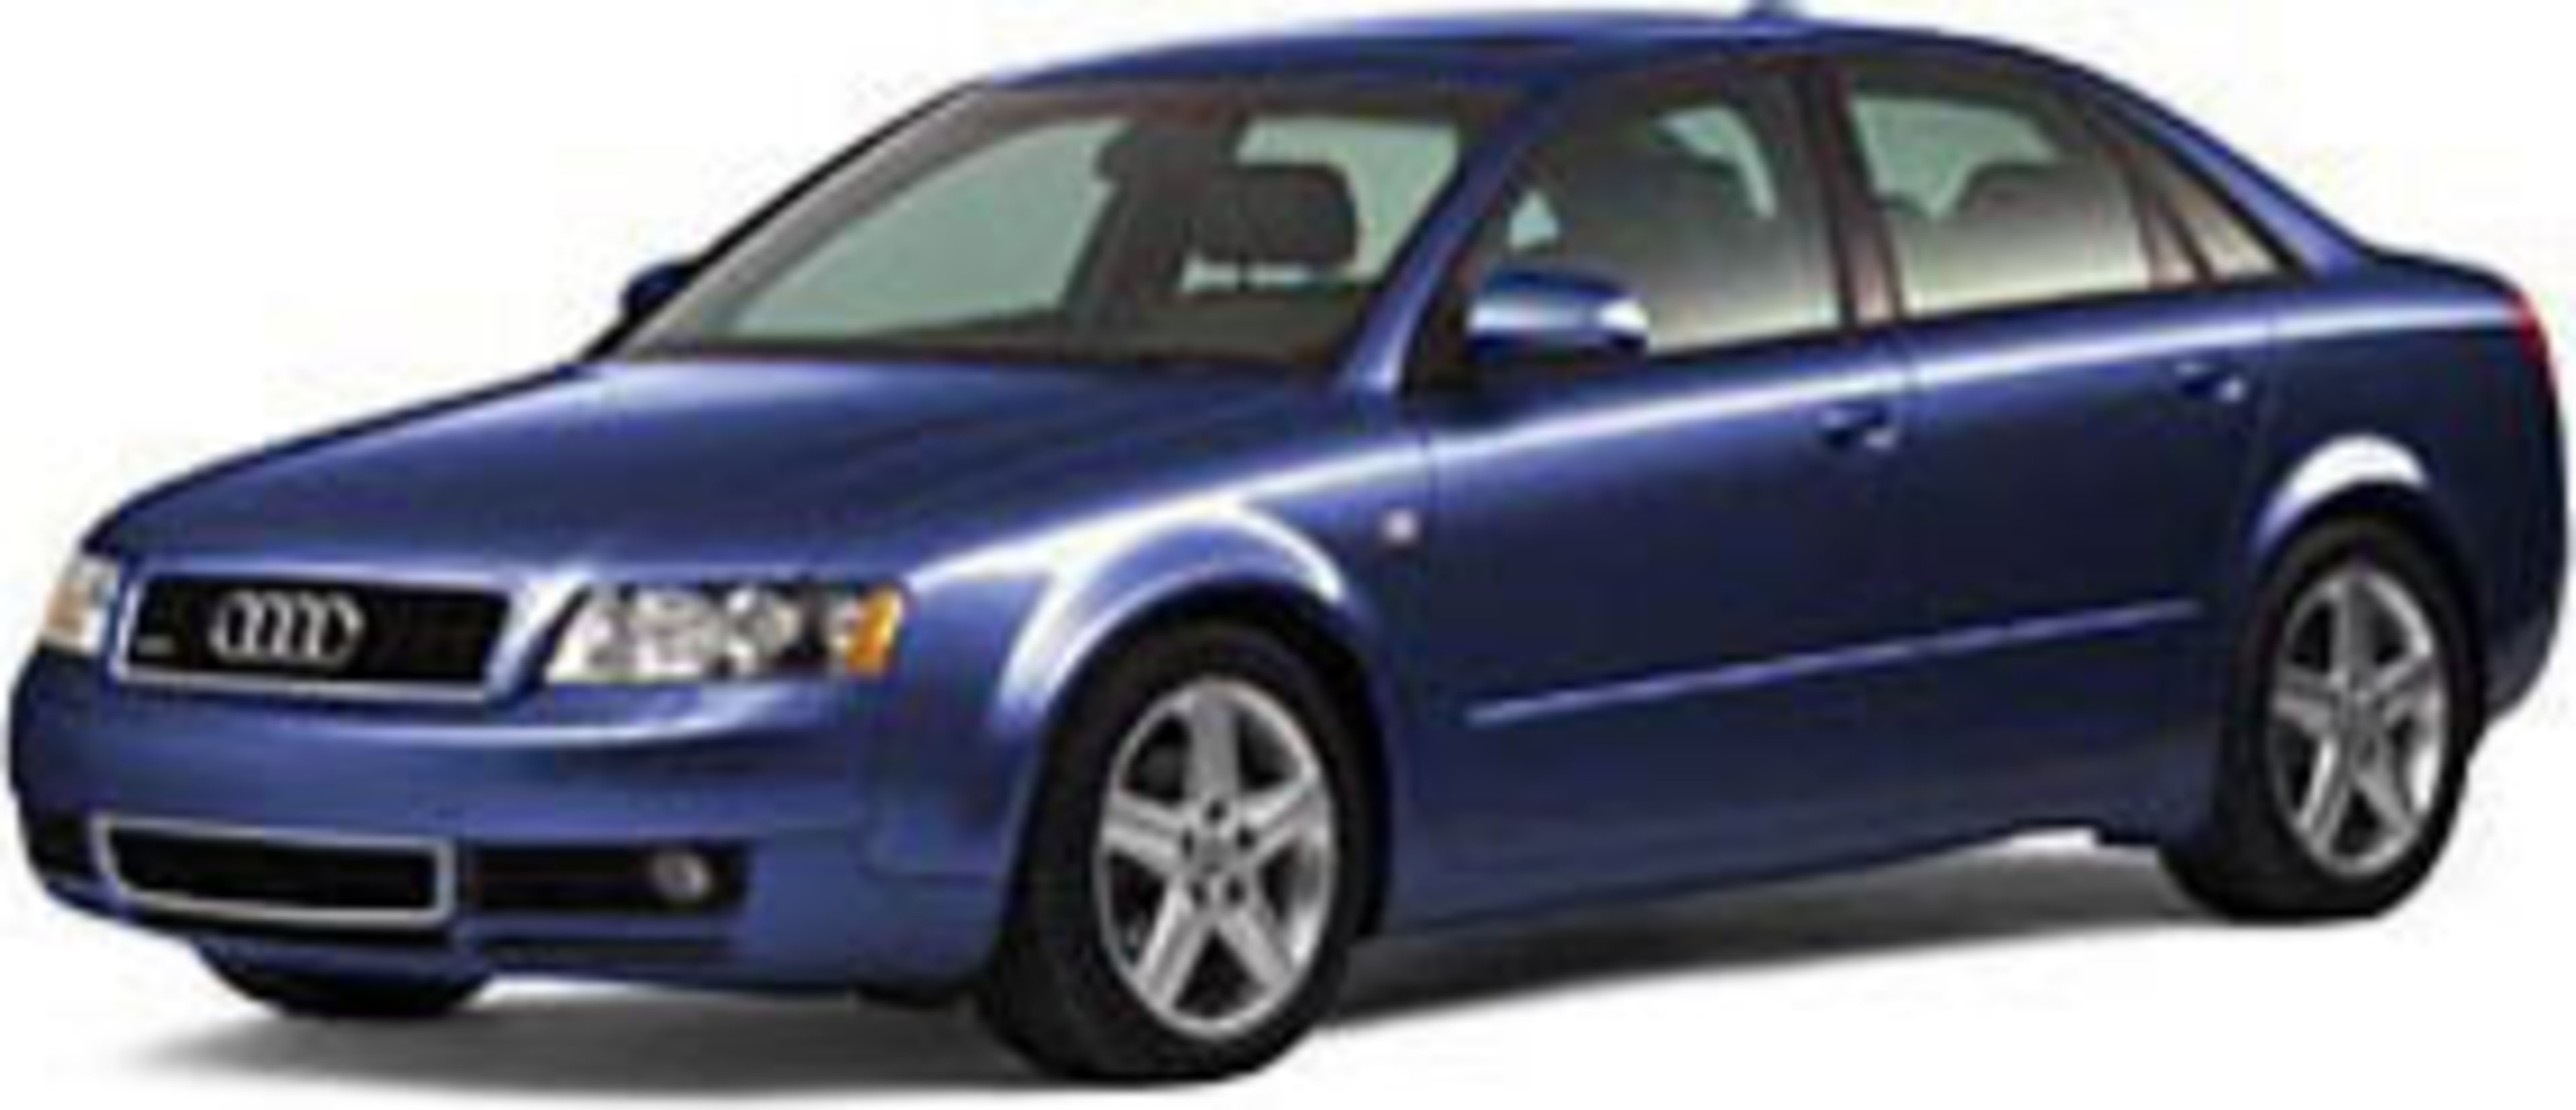 2005 Audi A4 Service and Repair Manual